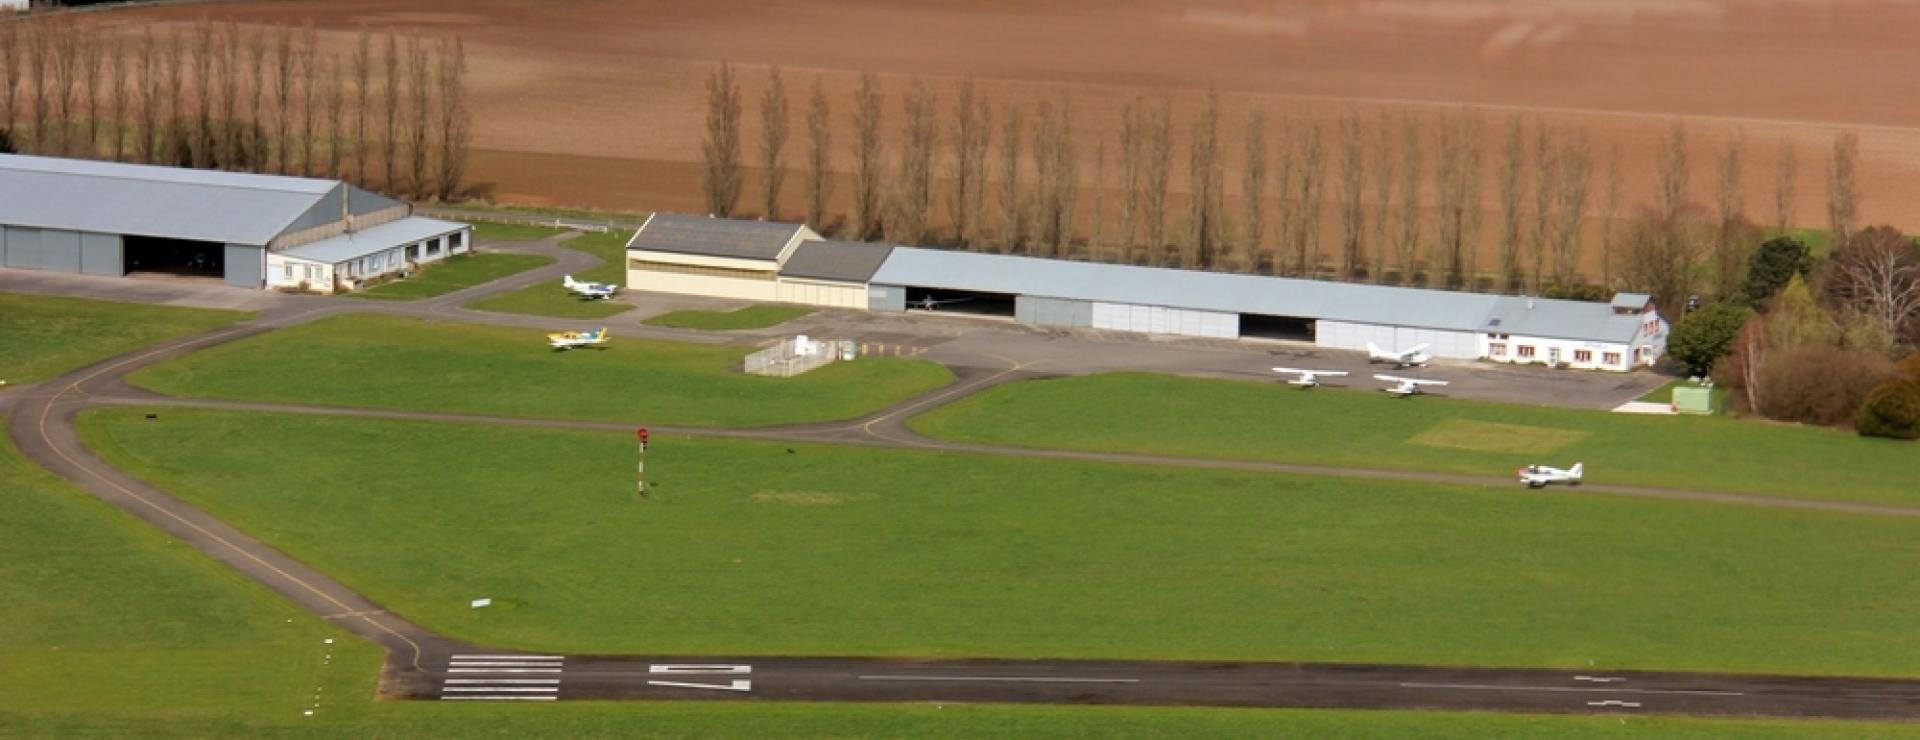 Aérodrome du Plessis-Belleville